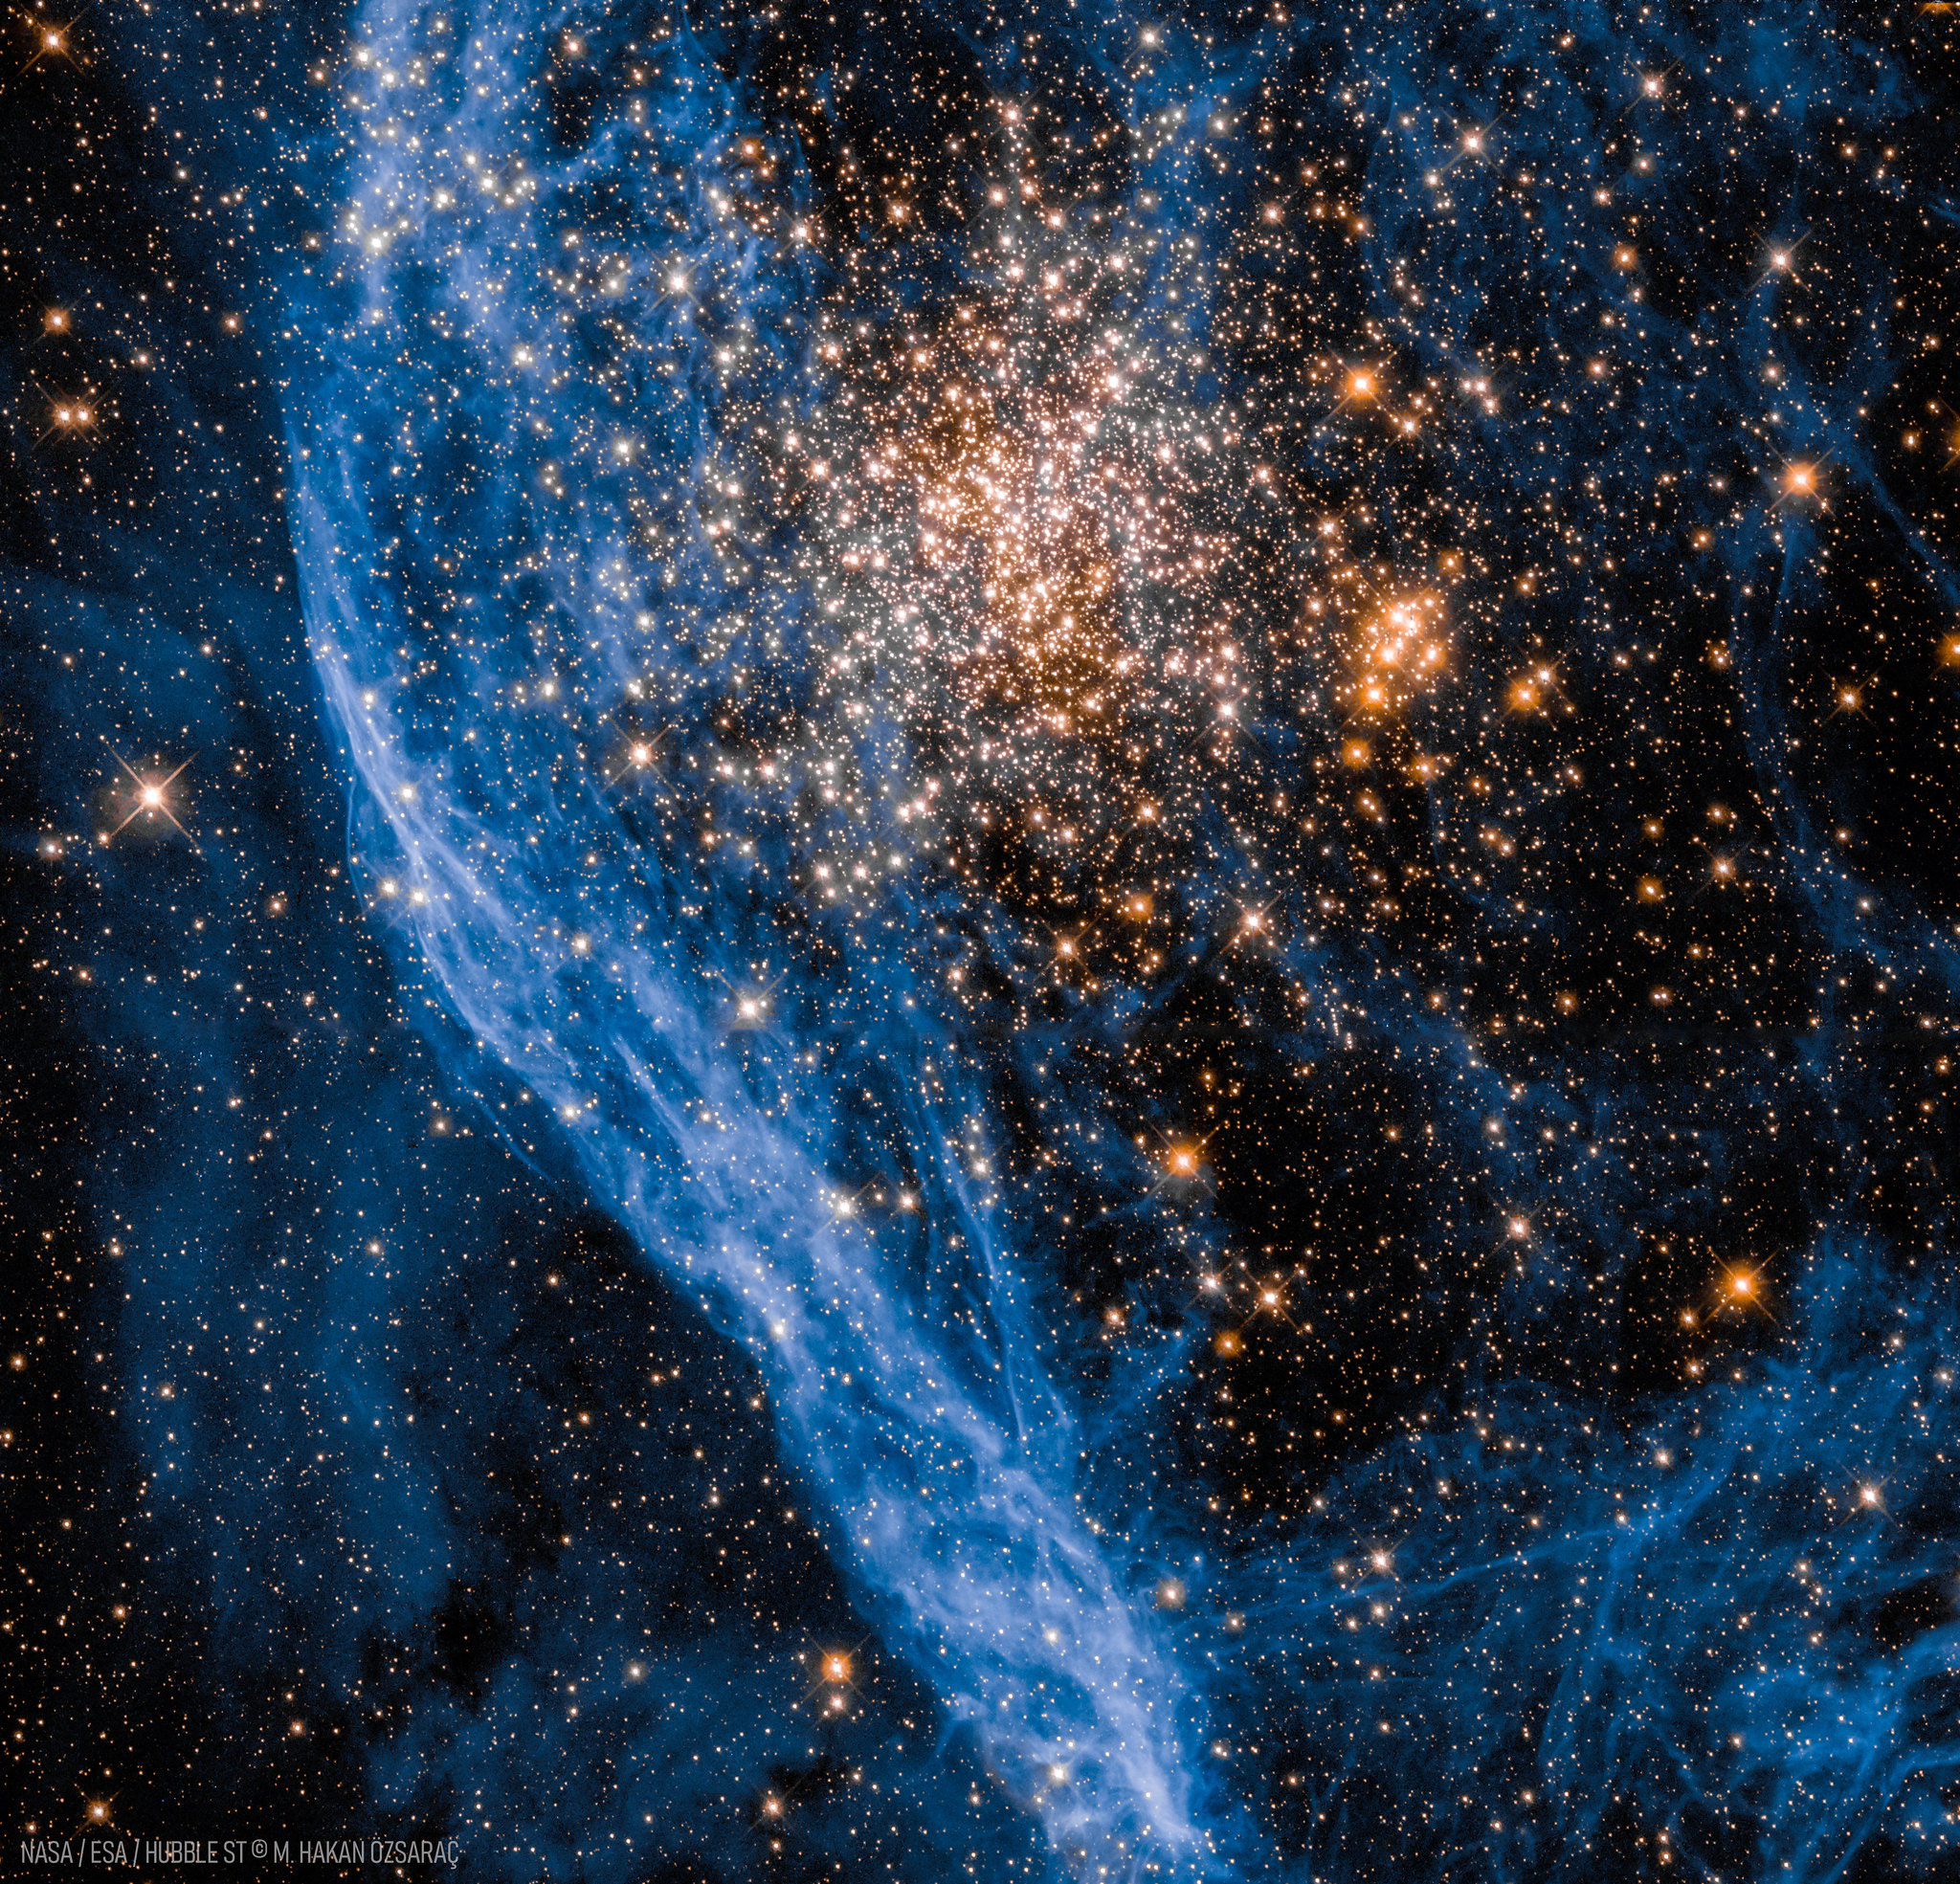 NGC 1850:     